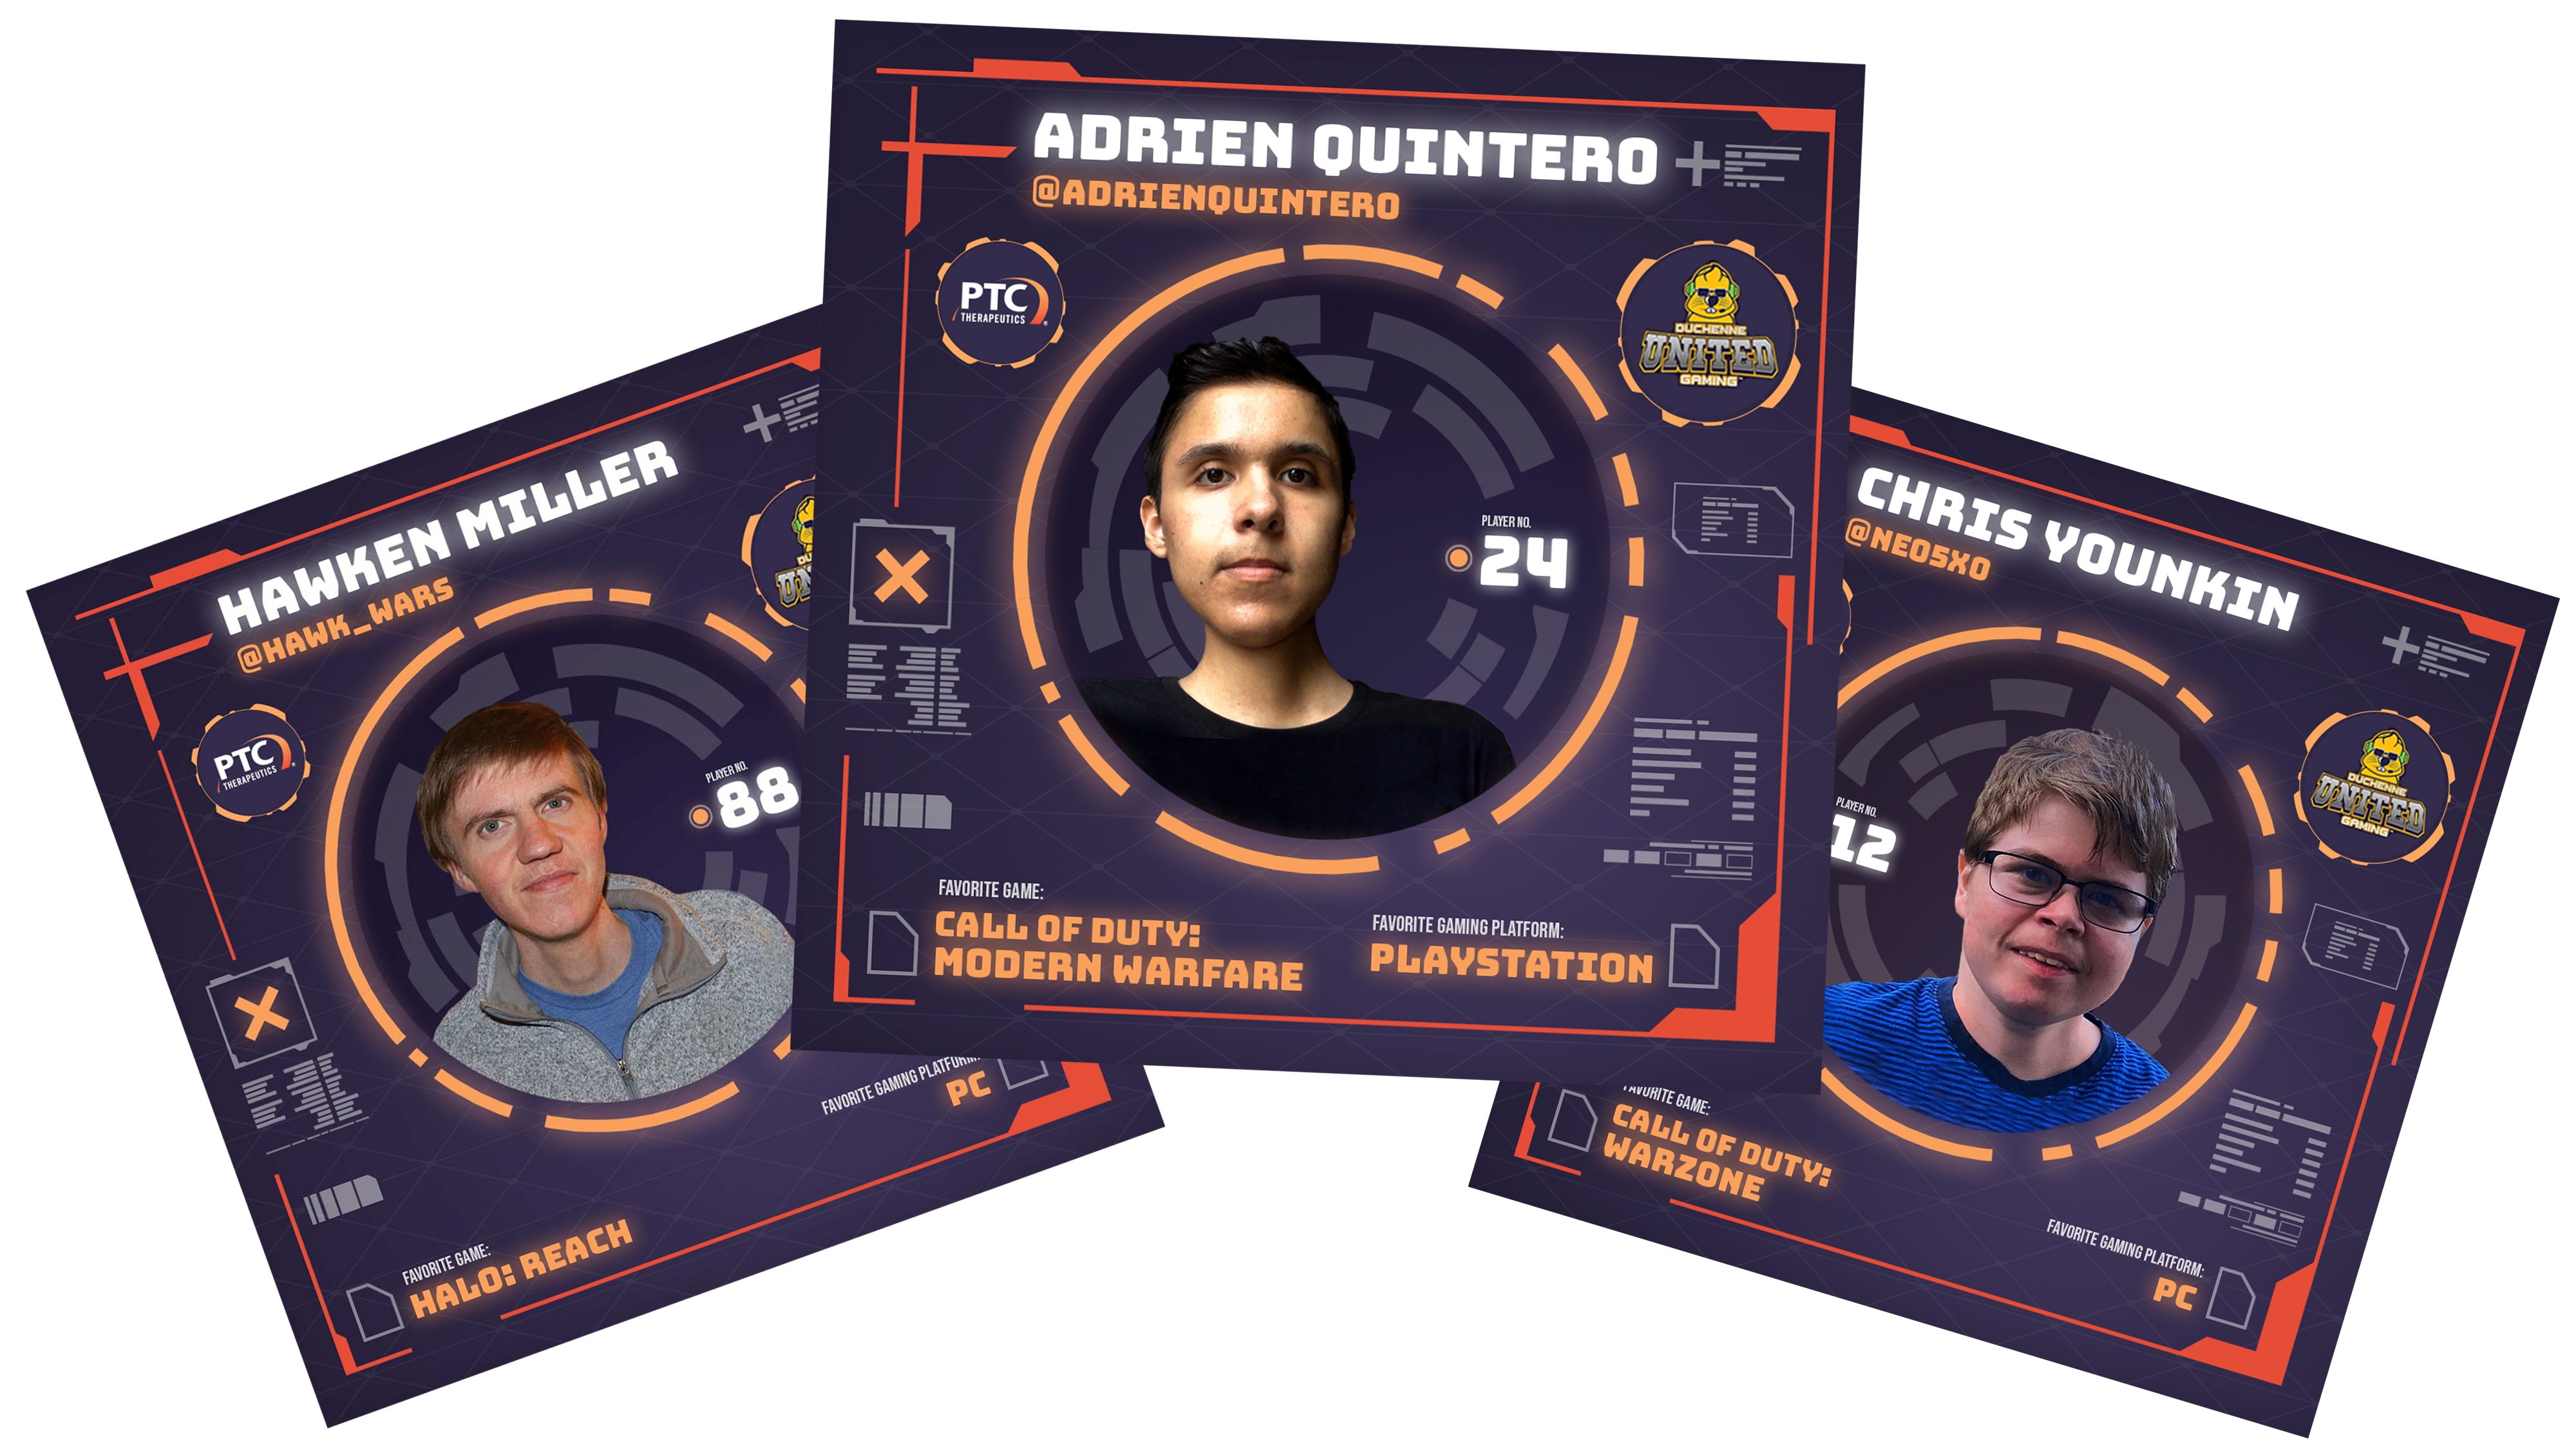 Hawken Miller, Adrien Quintero and Chris Younken - DUG Gamers